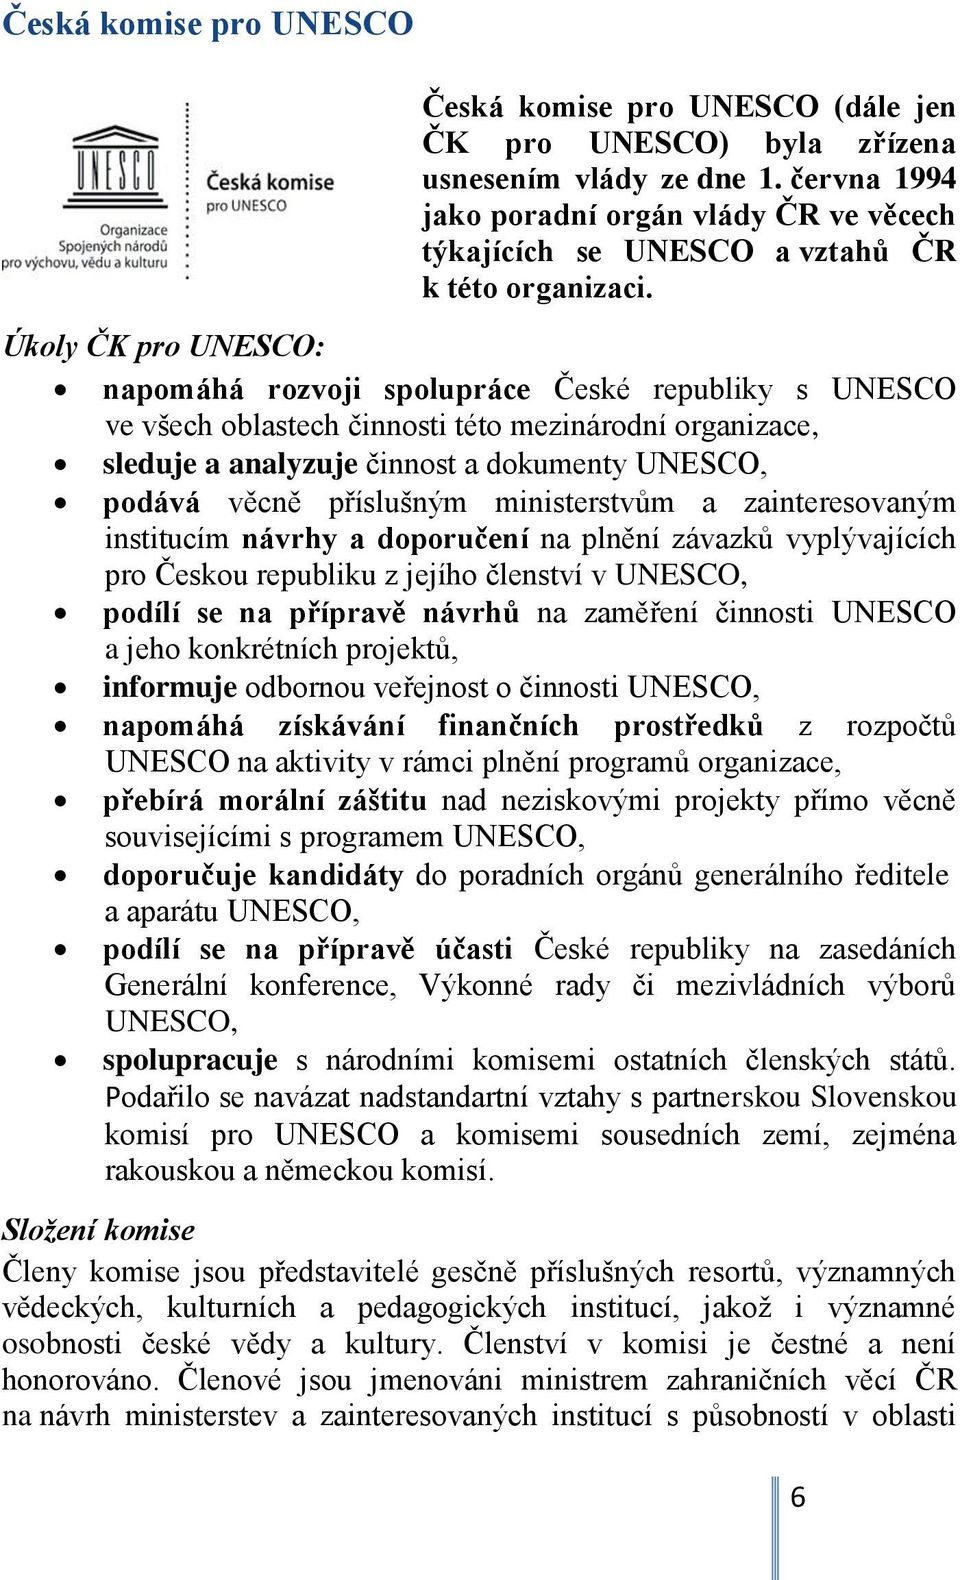 Úkoly ČK pro UNESCO: napomáhá rozvoji spolupráce České republiky s UNESCO ve všech oblastech činnosti této mezinárodní organizace, sleduje a analyzuje činnost a dokumenty UNESCO, podává věcně